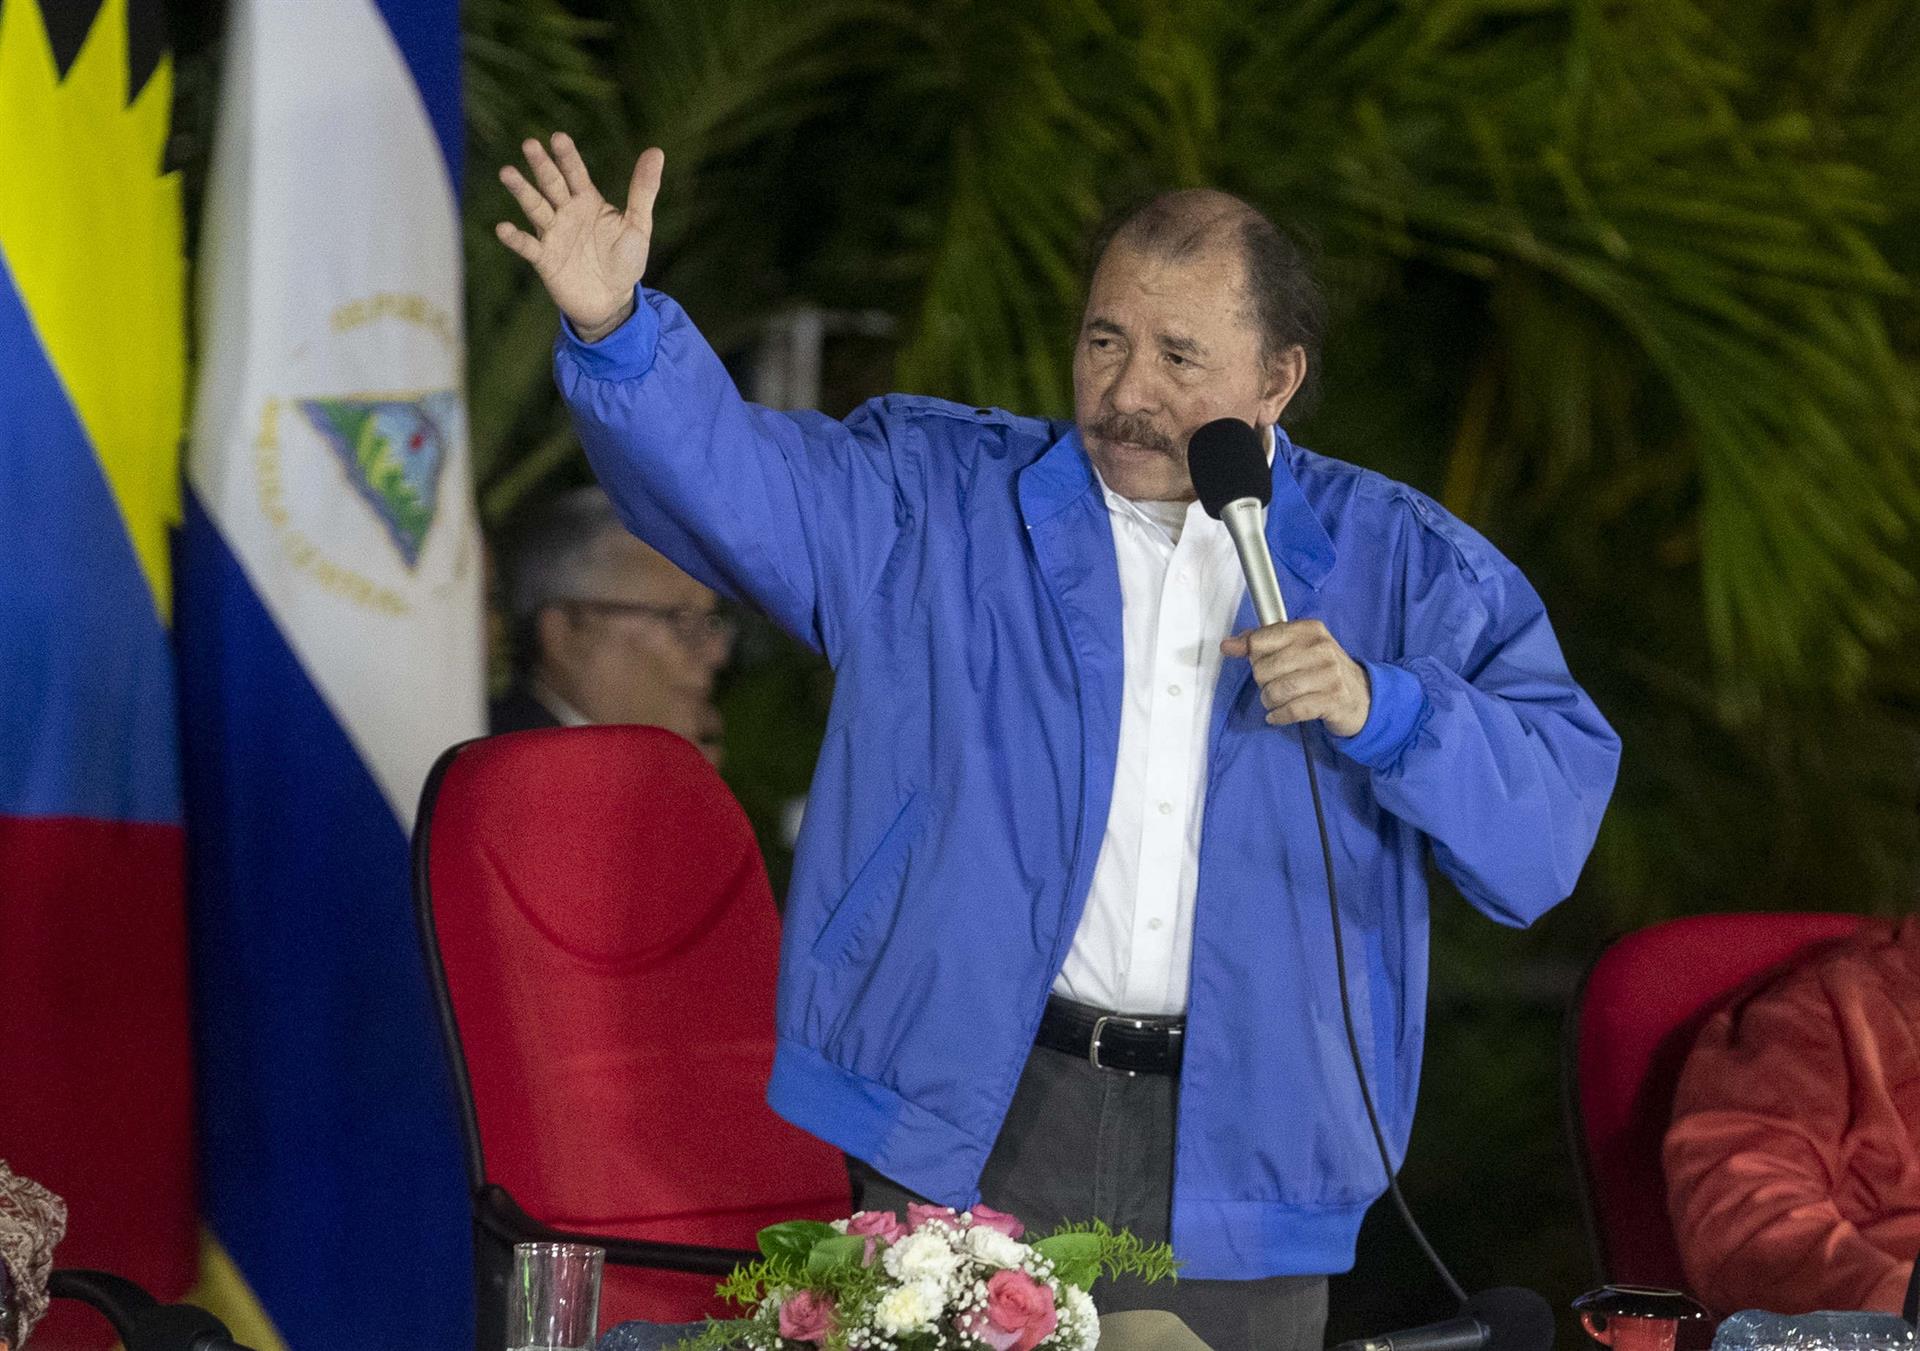 Medios alertan que Ortega busca imponer su narrativa como única verdad en Nicaragua